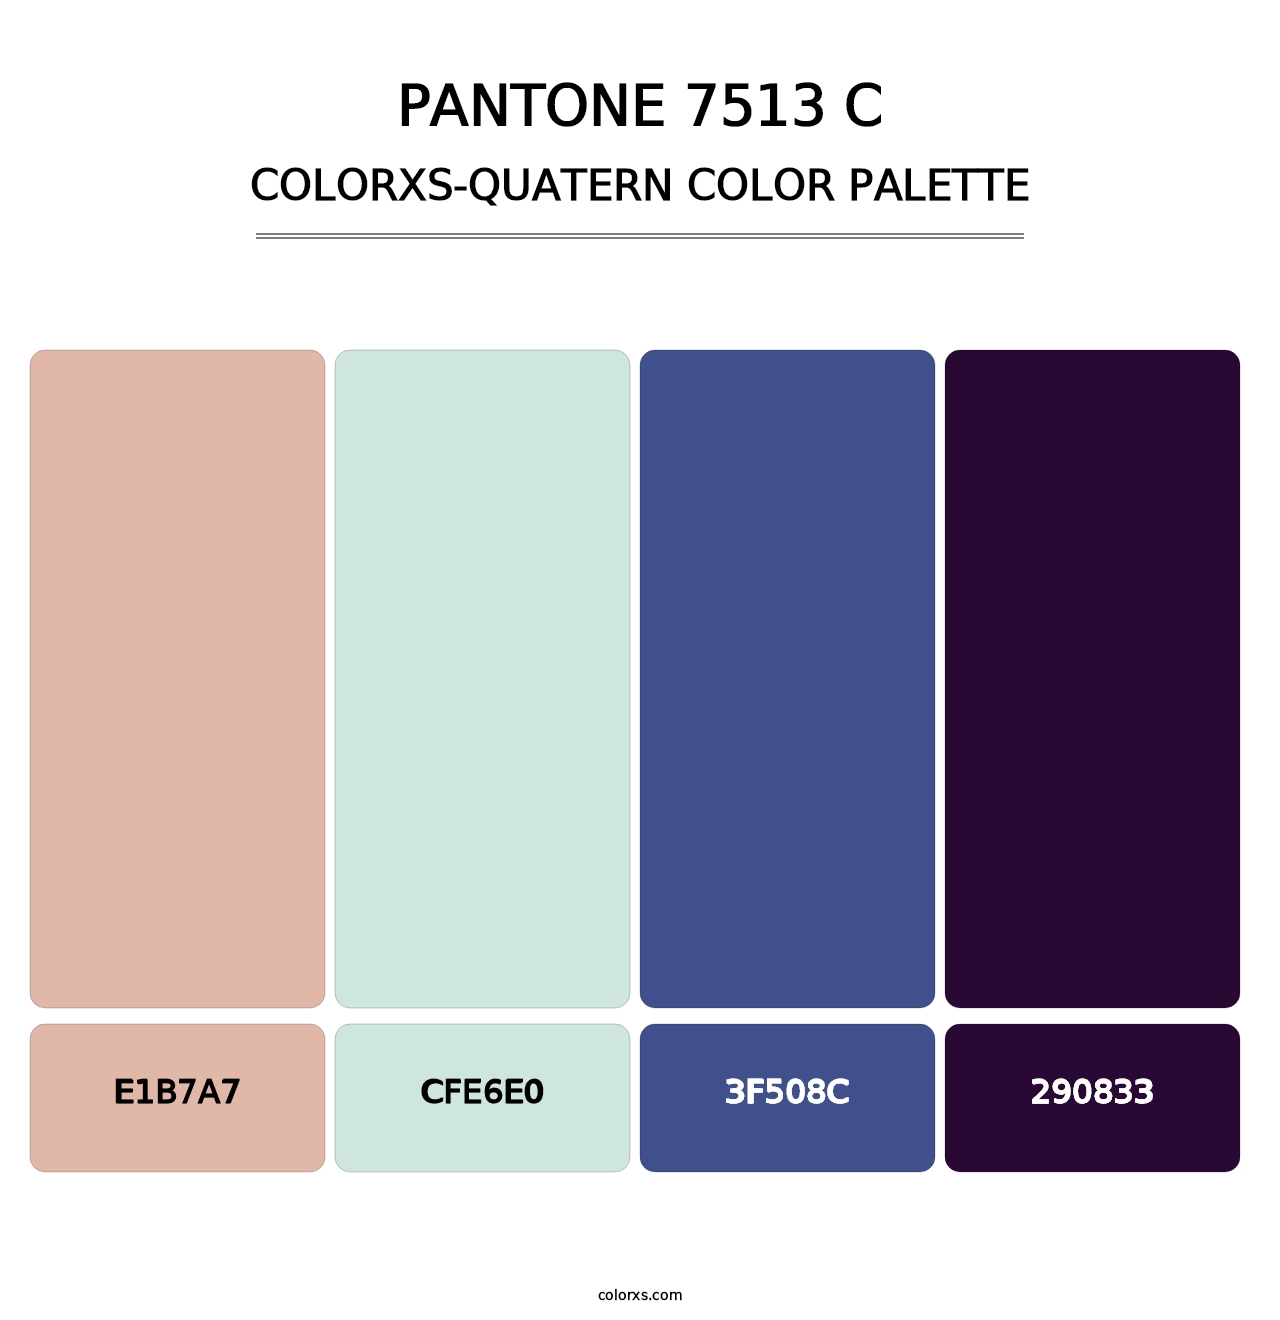 PANTONE 7513 C - Colorxs Quatern Palette